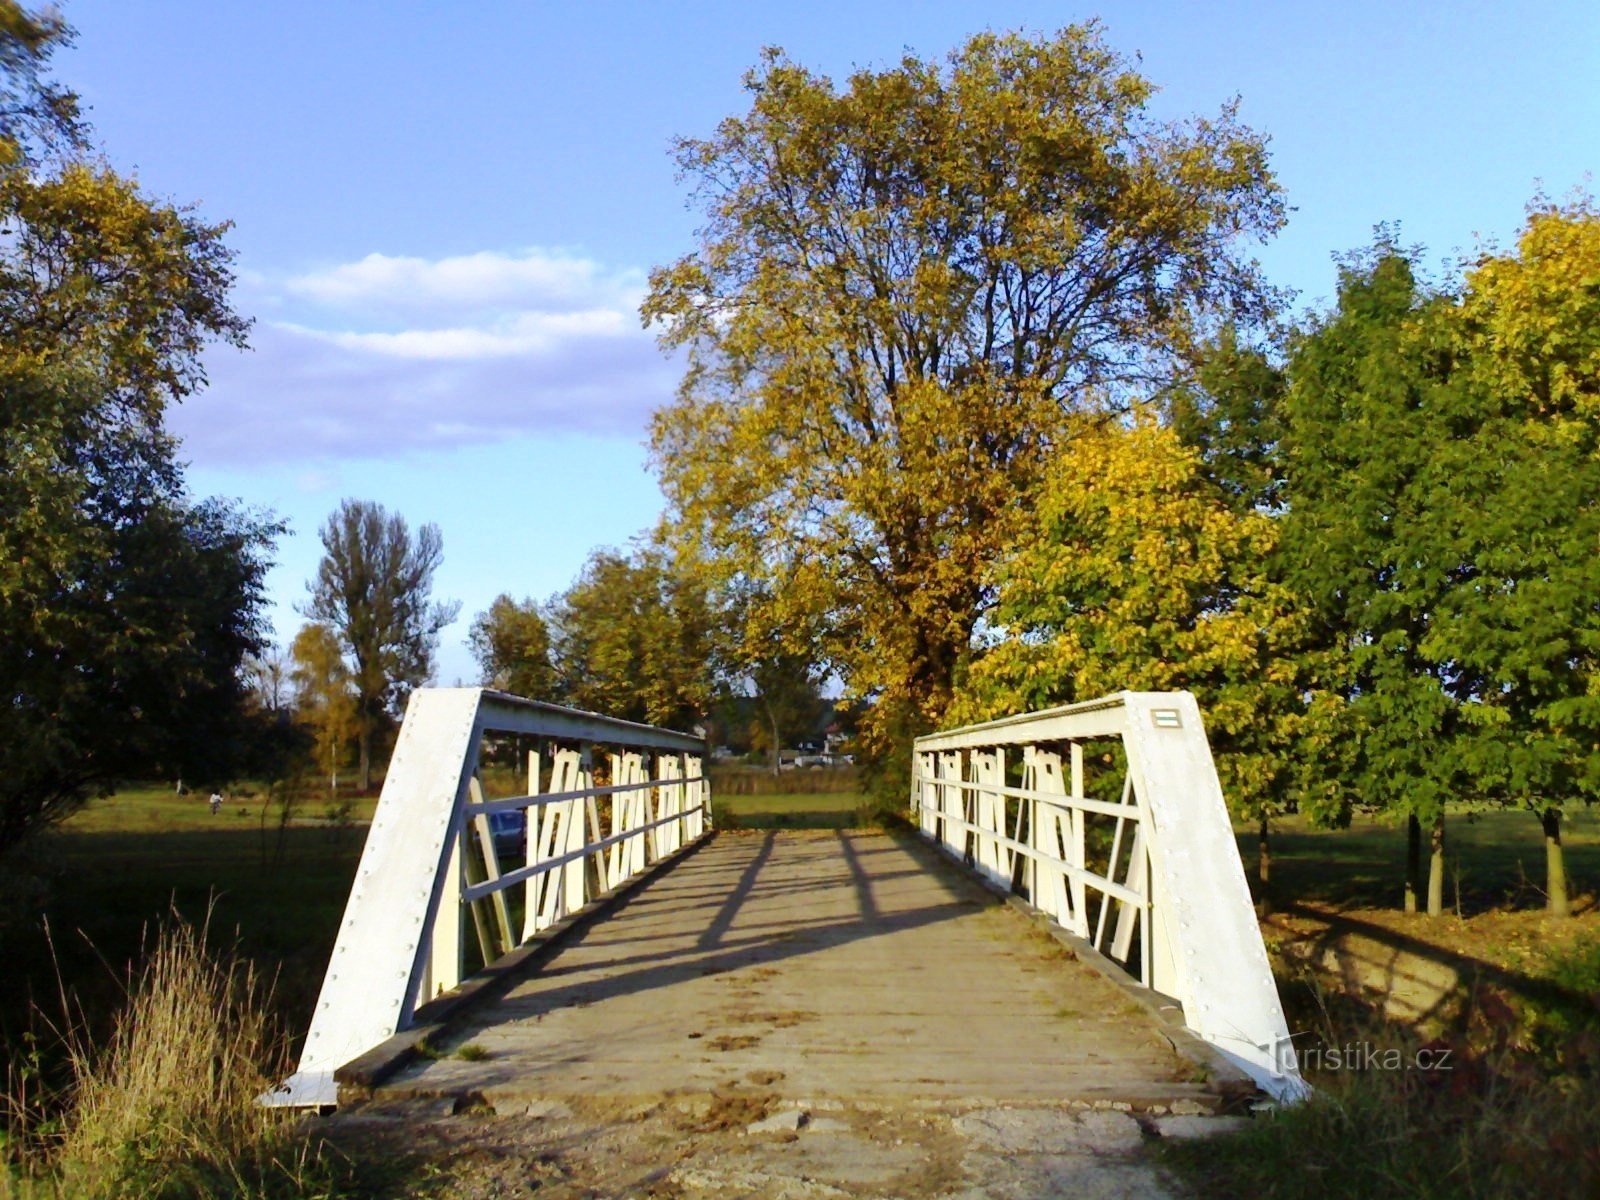 Blesno 附近的 Orlica 桥